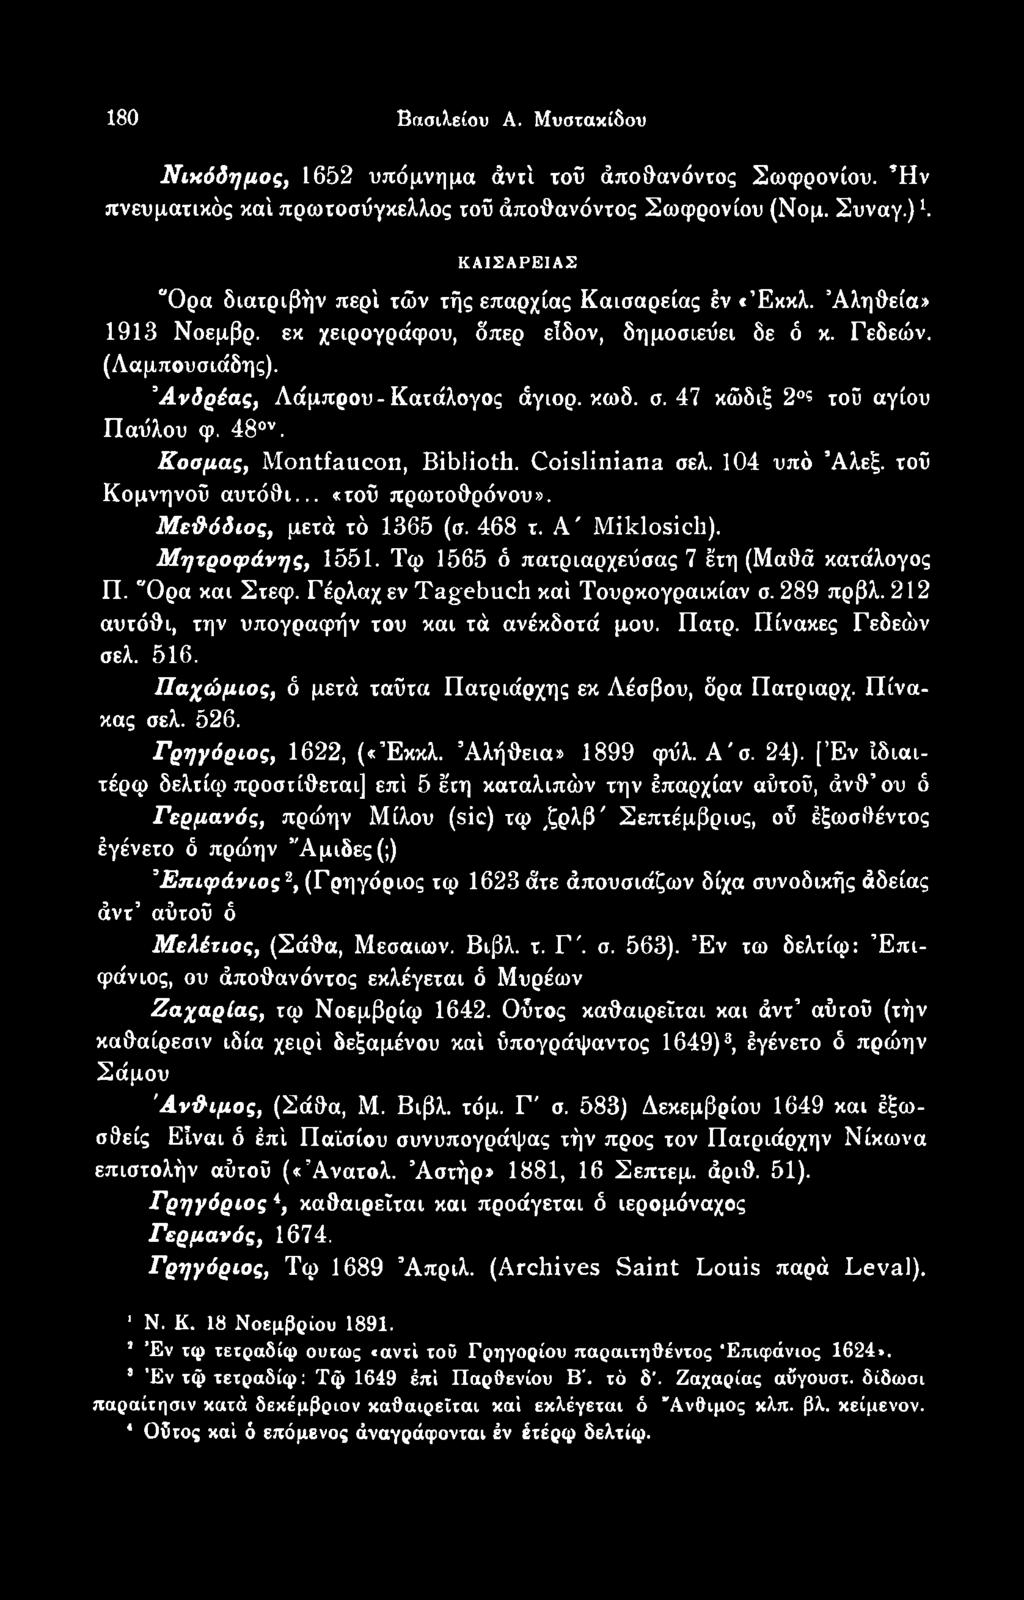 Πίνακες Γεδεών σελ. 516. Παχώμιος, δ μετά ταϋτα Πατριάρχης εκ Λέσβου, δρα Πατριαρχ. Πίνακας σελ. 526. Γρηγόριος, 1622, («Έκκλ. Αλήθεια» 1899 φύλ. Α'σ. 24).